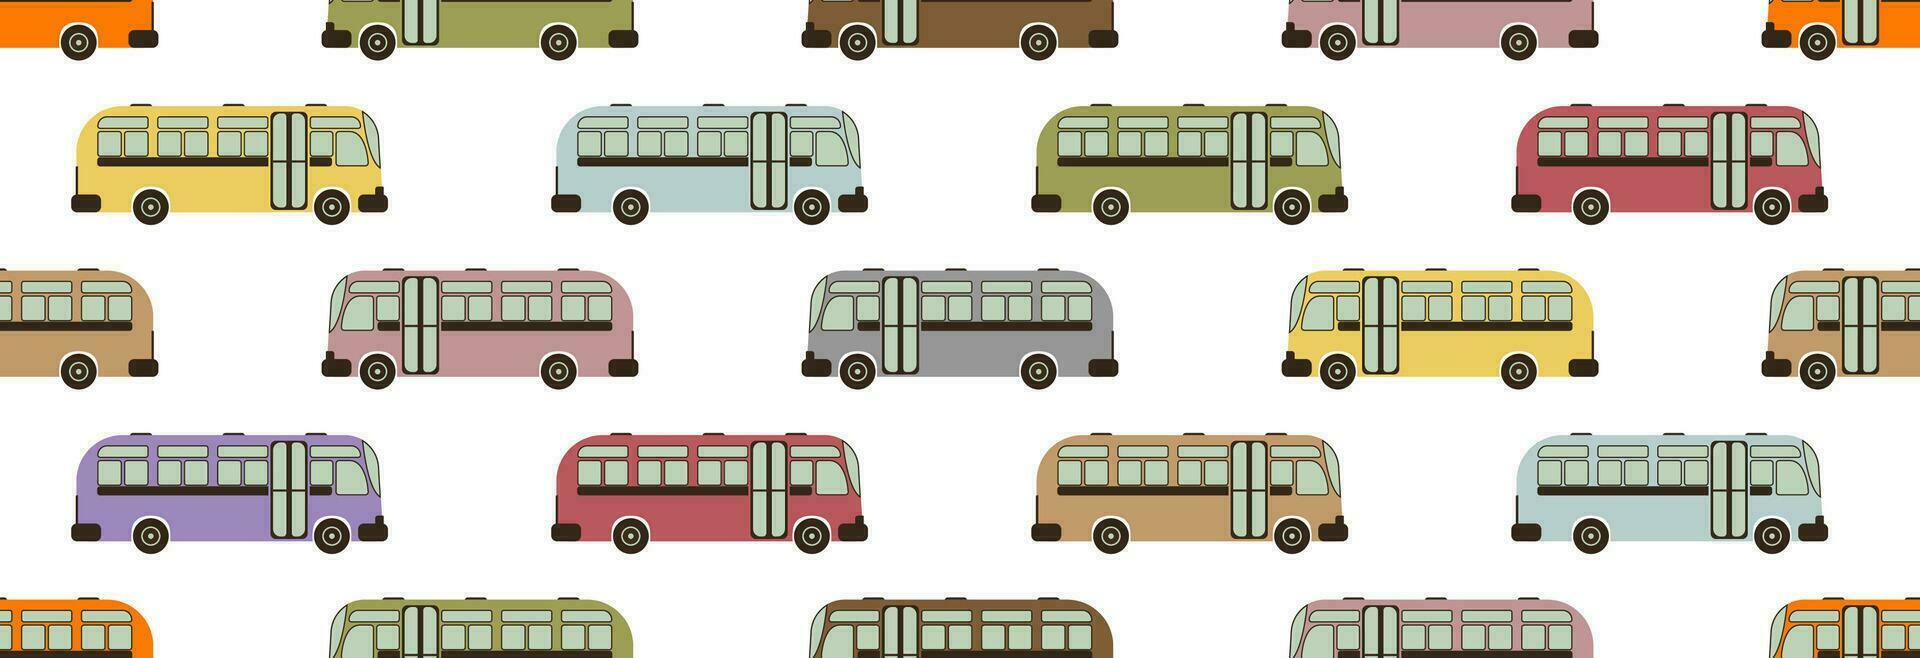 público transporte autobús. vector